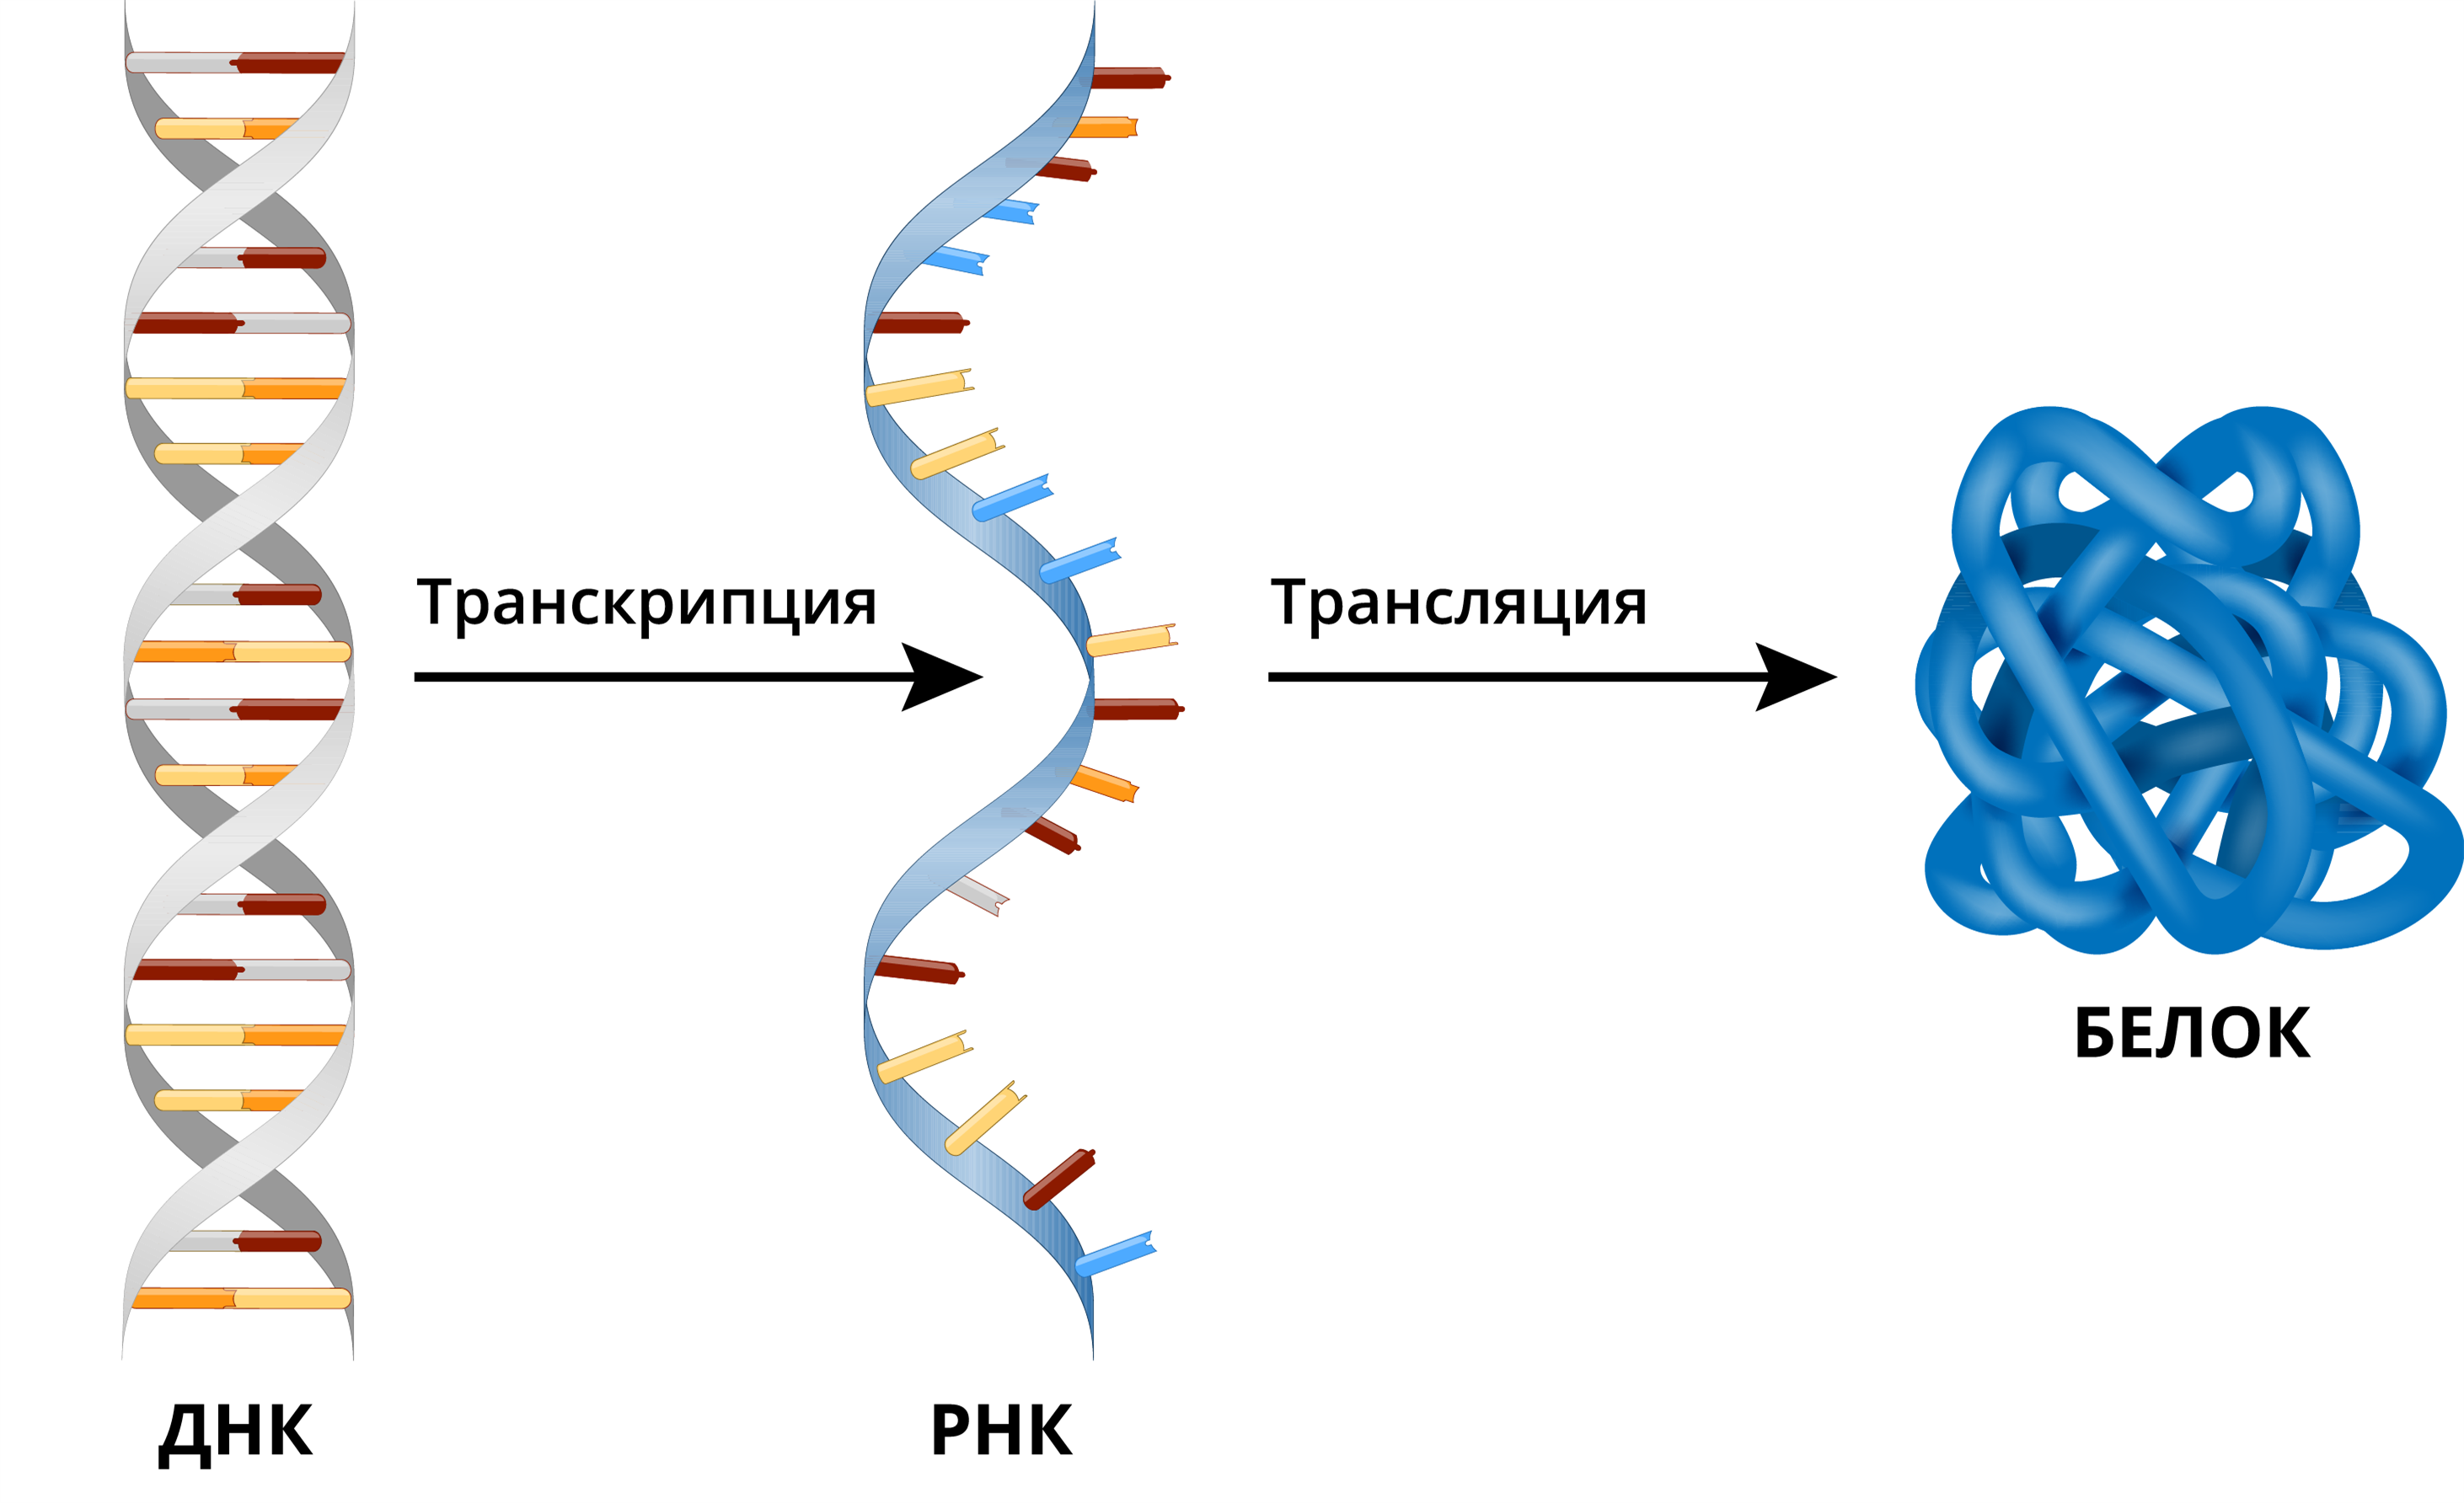 ДНК РНК белок схема. ДНК ИРНК белок. Транскрипция и трансляция ДНК. ДНК транскрипция РНК трансляция белок. Репликация в биологии